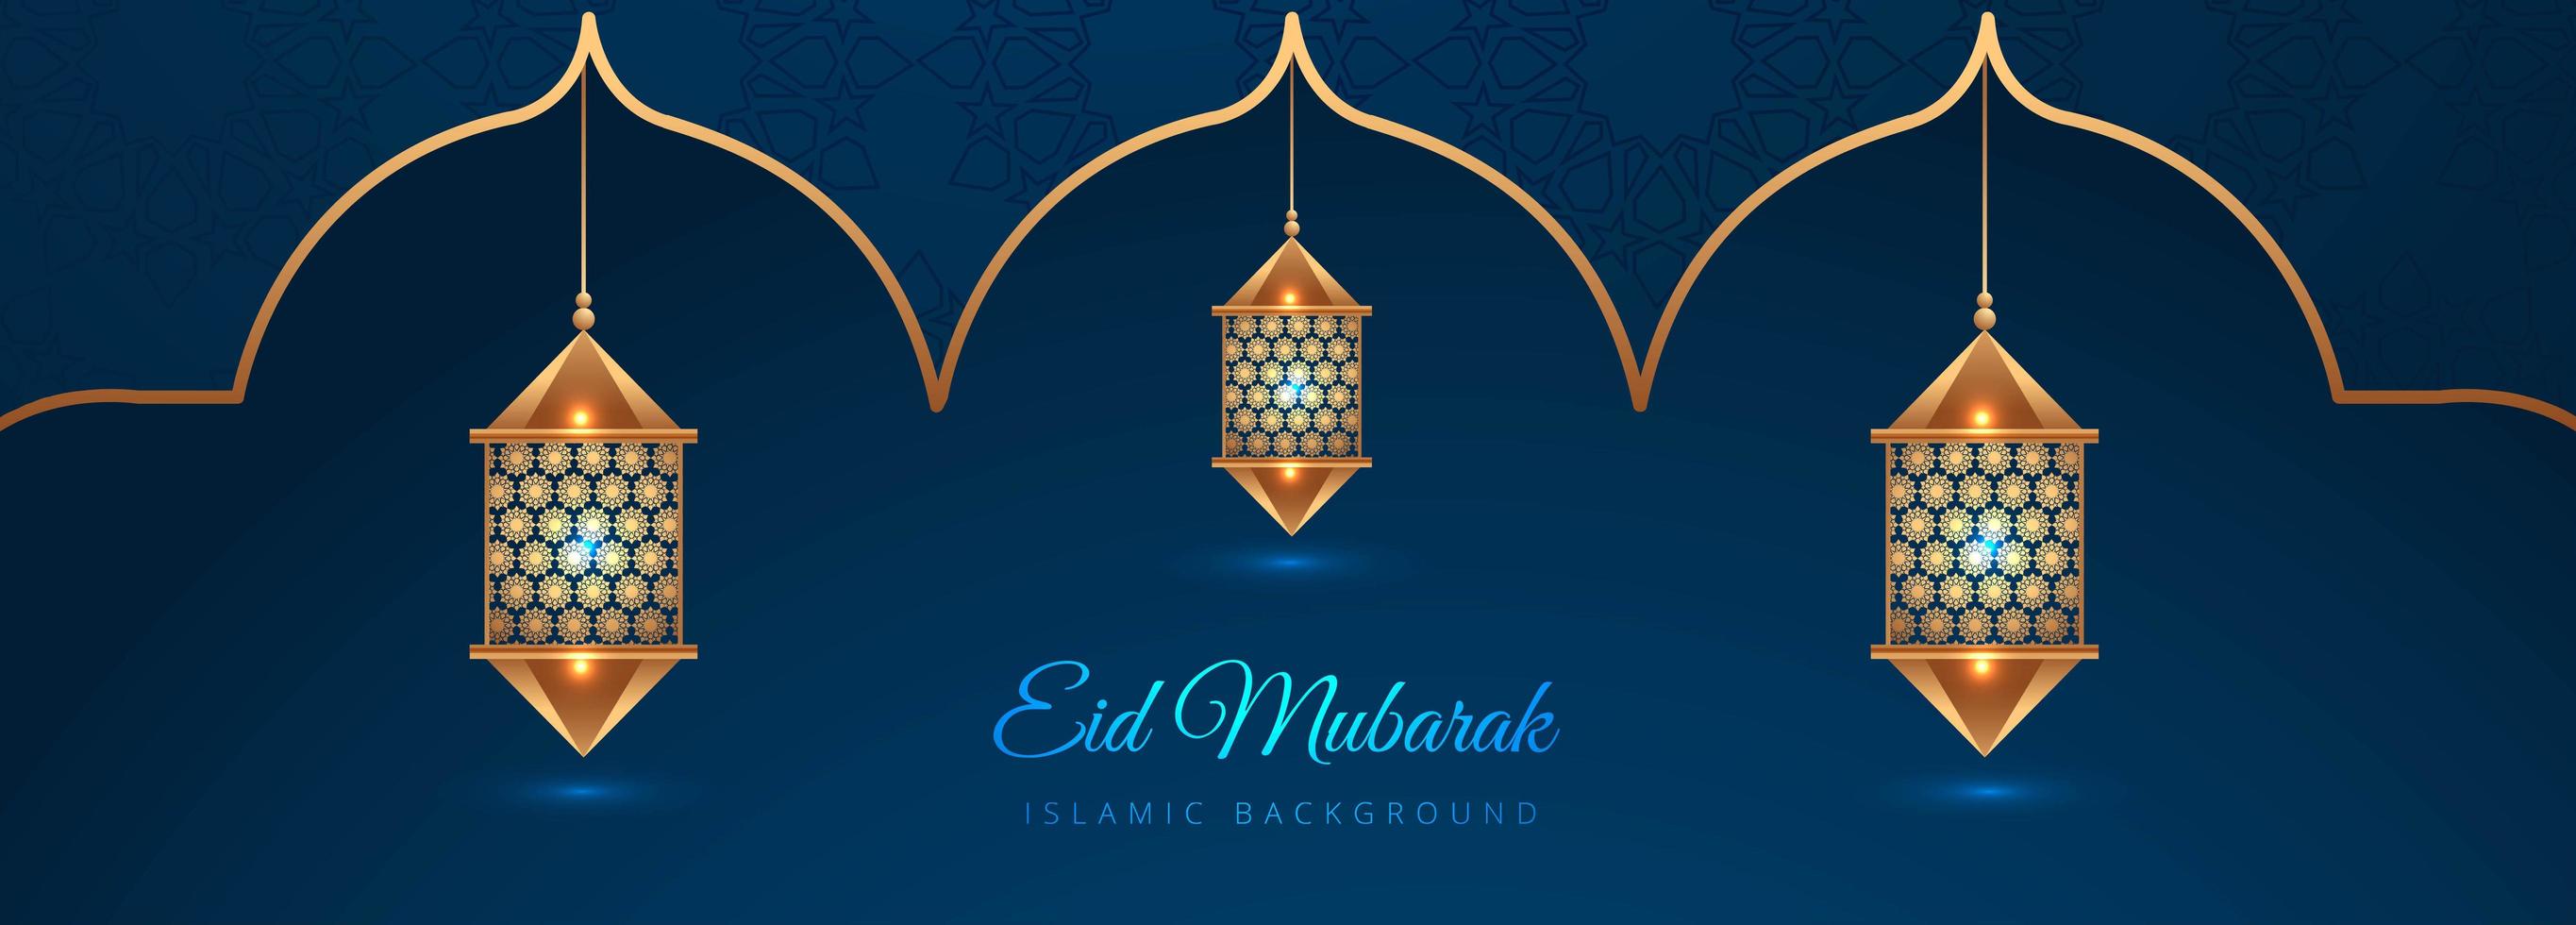 Estandarte islámico creativo eid mubarak en oro y azul vector